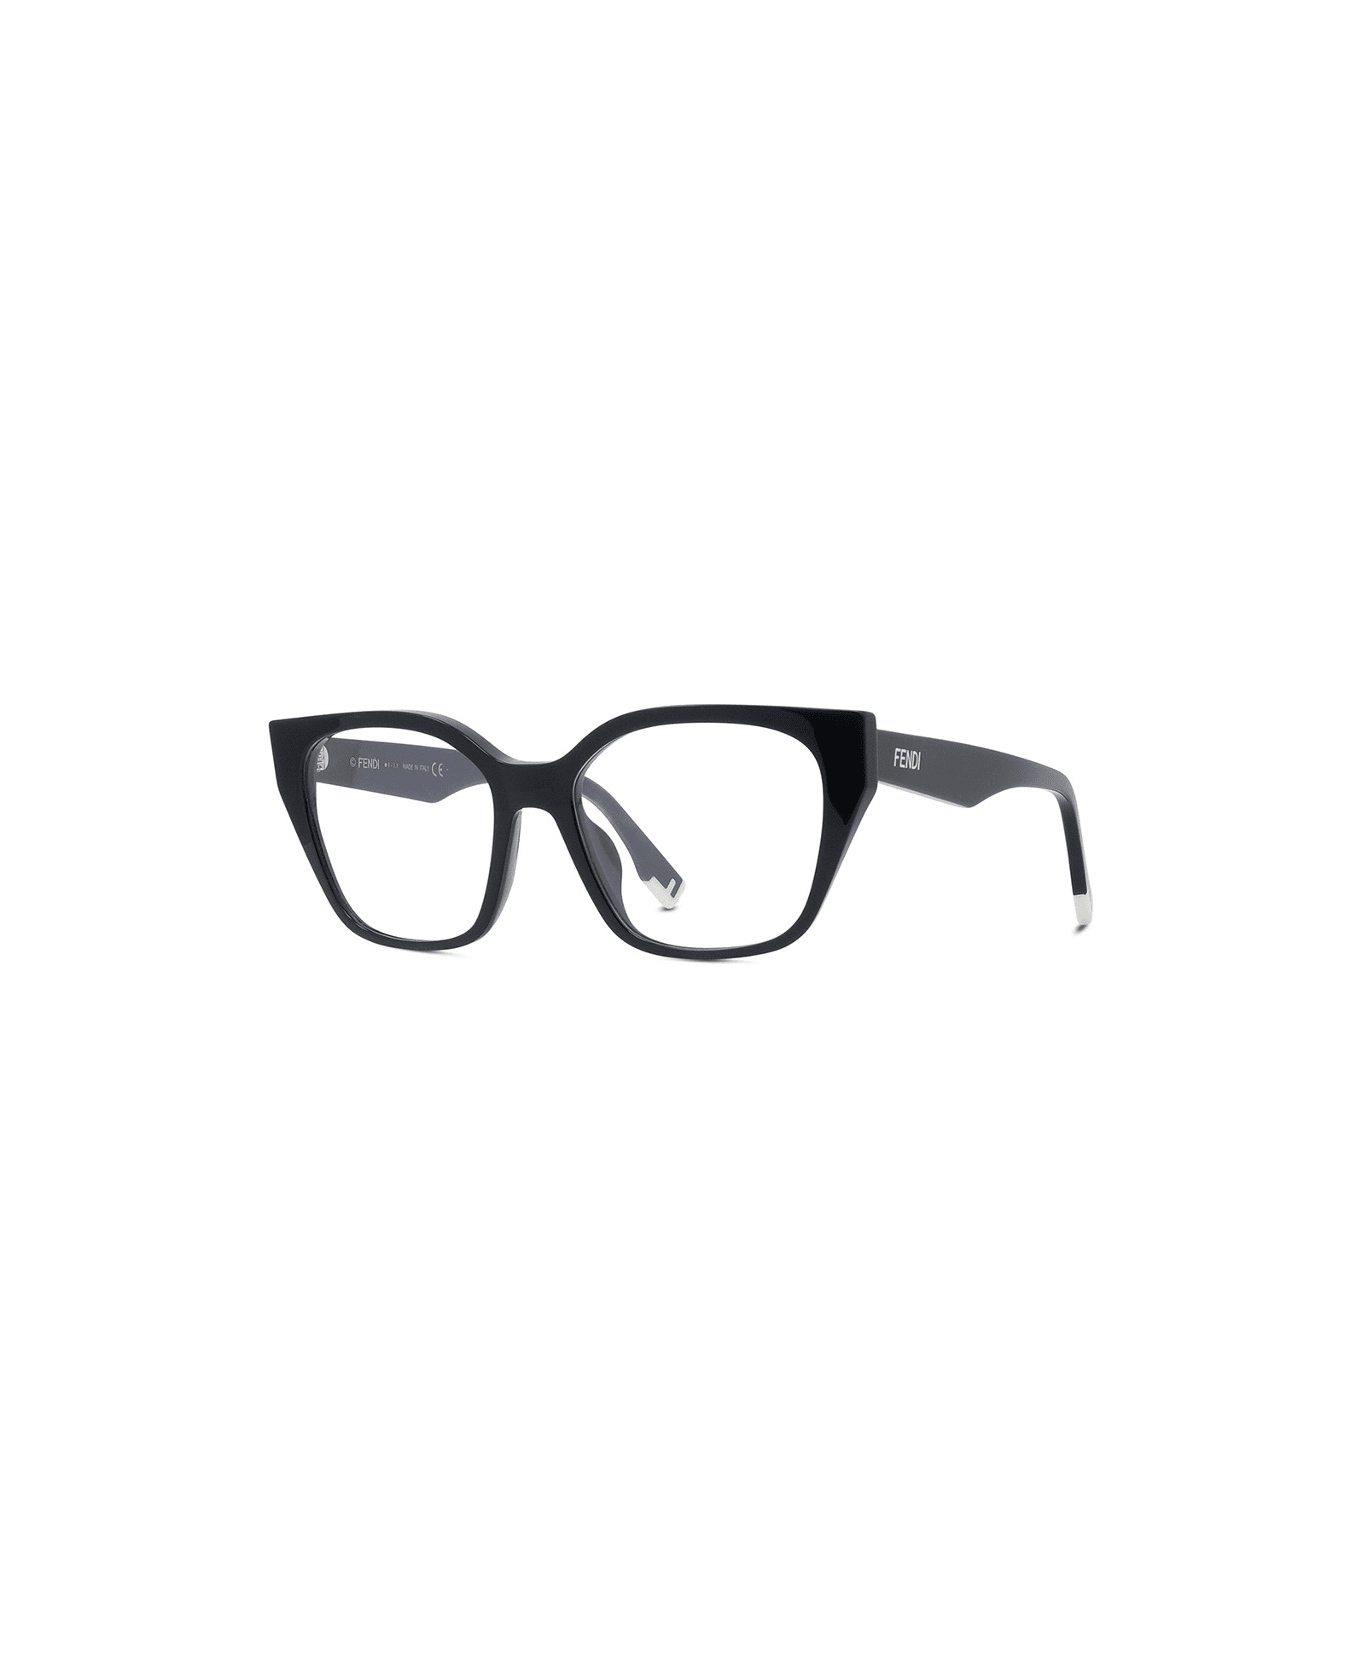 Fendi Eyewear FE50001i 001 Glasses - Nero アイウェア